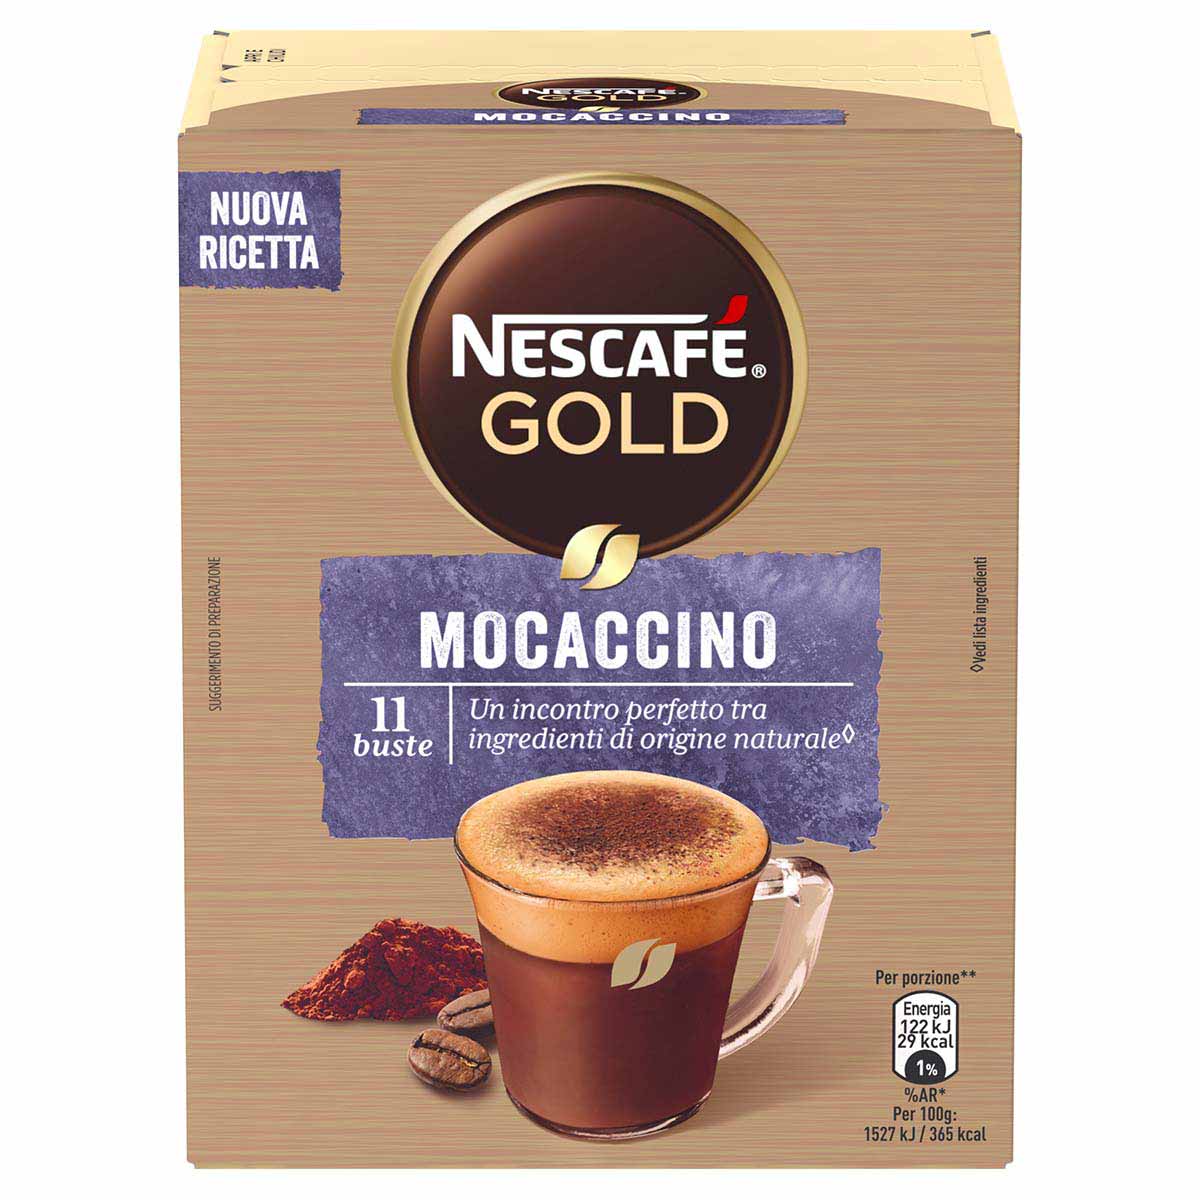 Nescafé GOLD MOCACCINO preparato solubile per caffè al cacao astuccio 11 bustine 88g